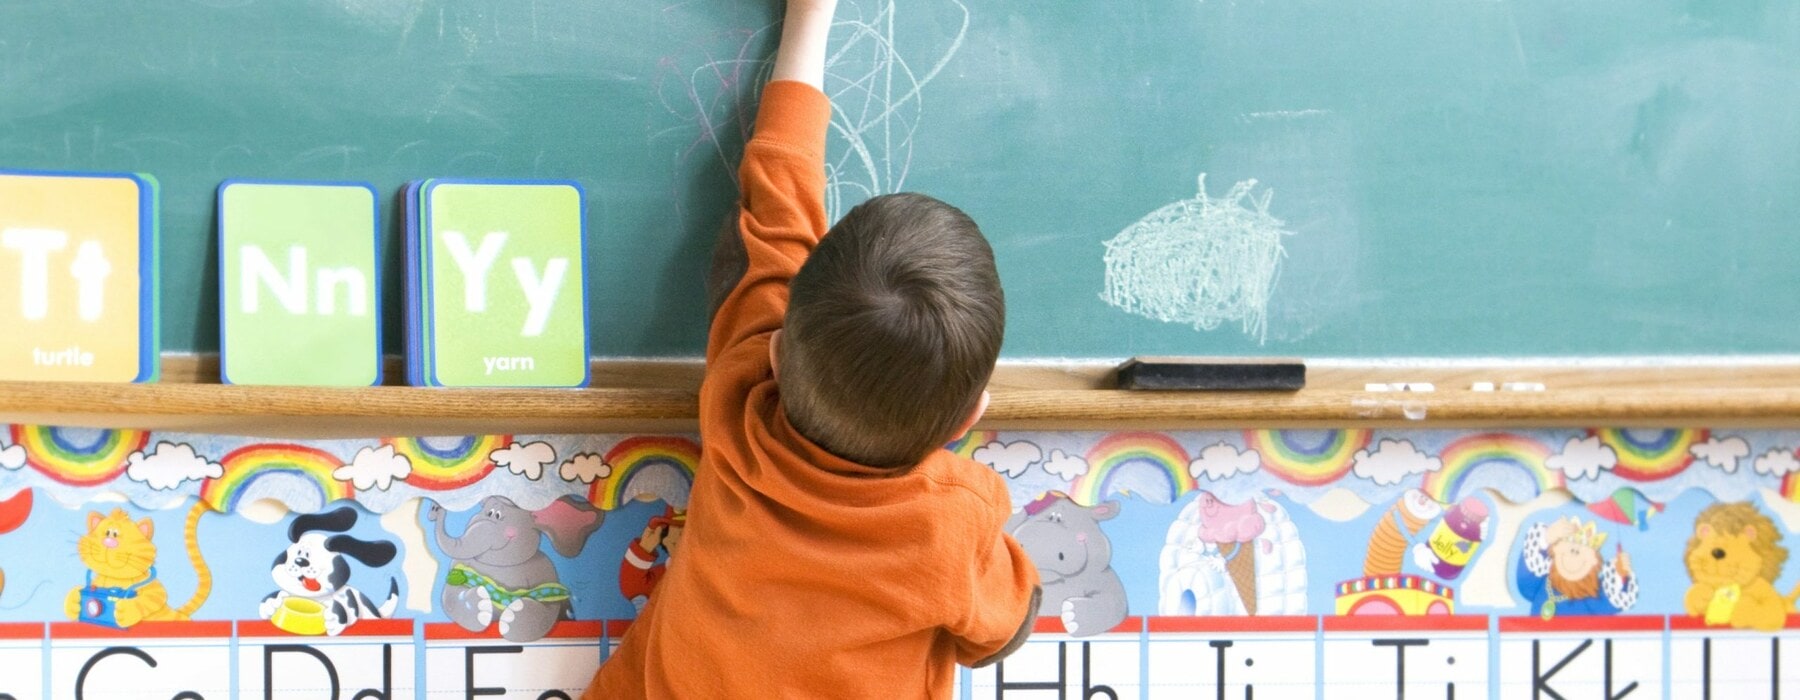 Little boy drawing on chalkboard at school